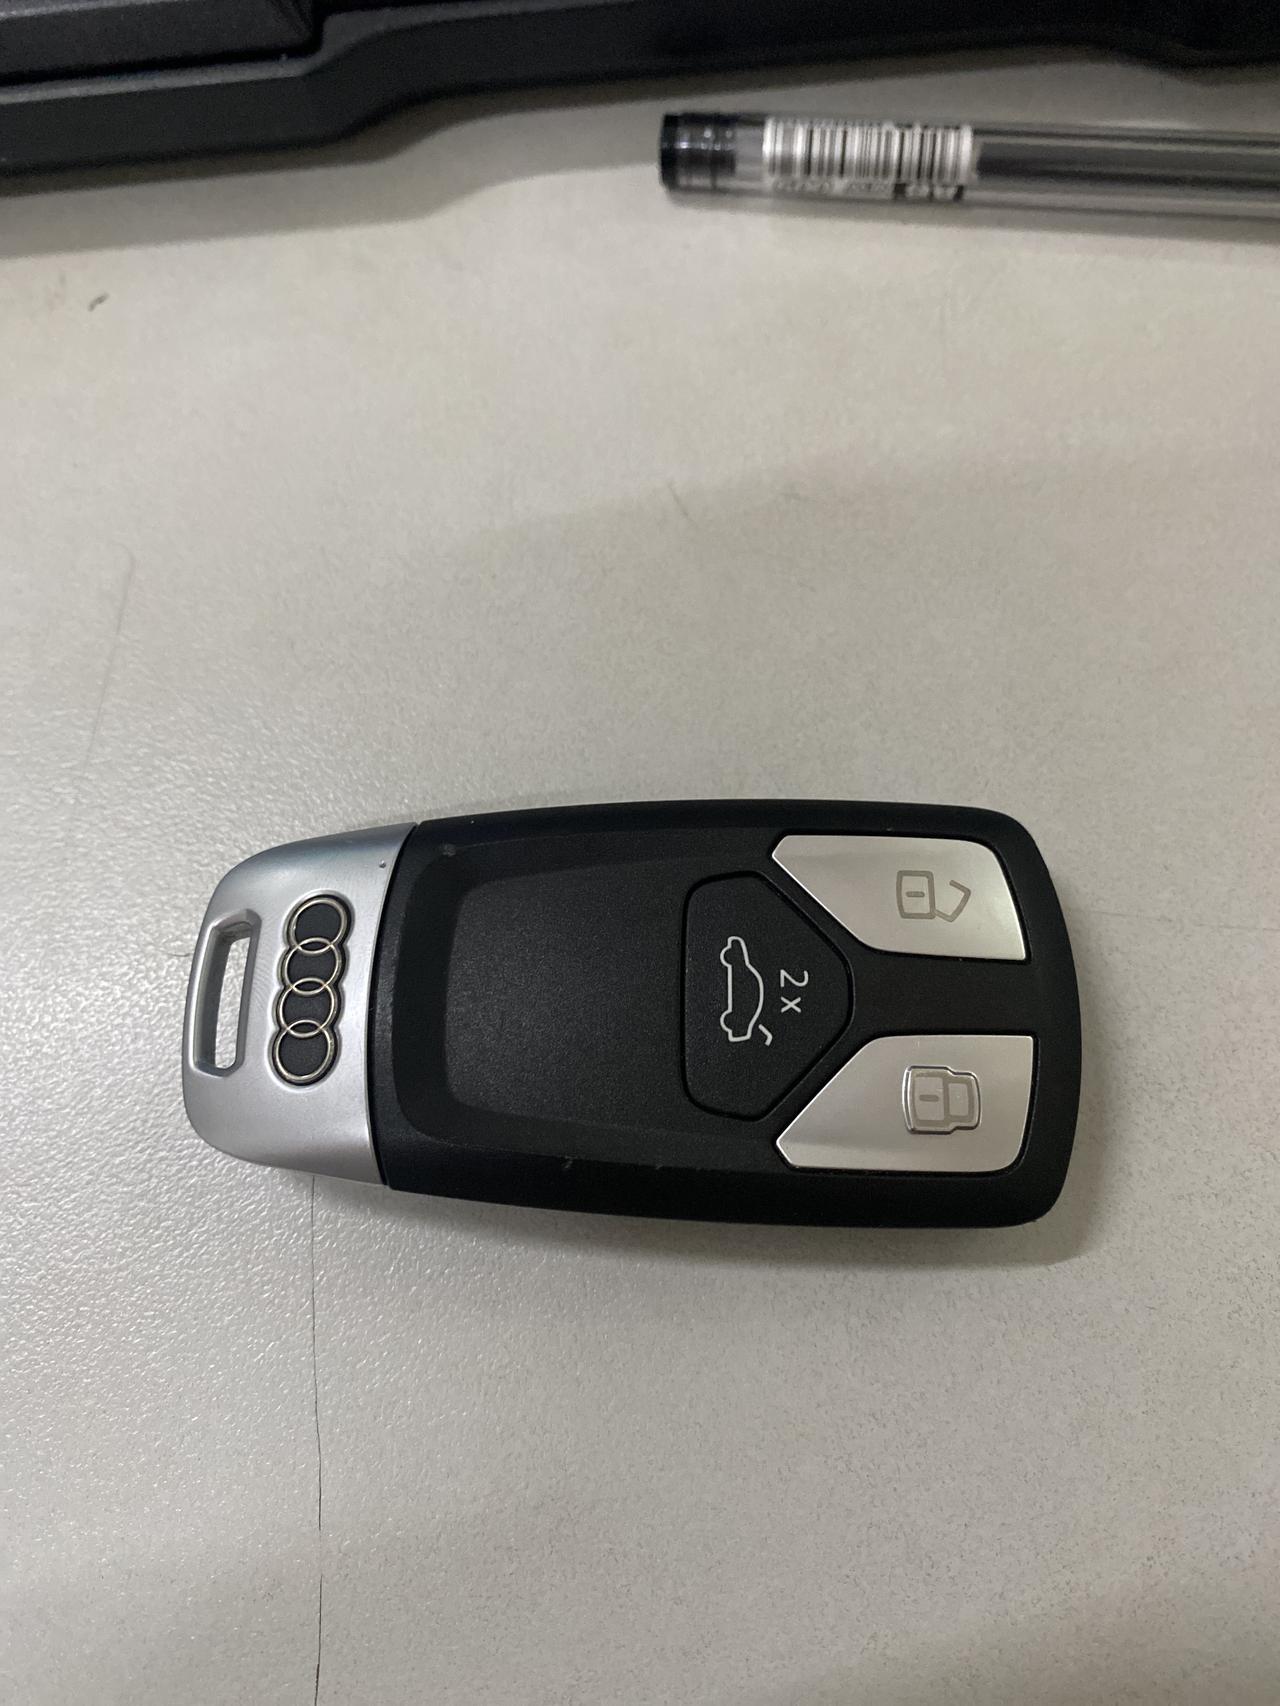 车钥匙如何更换钮孔电池